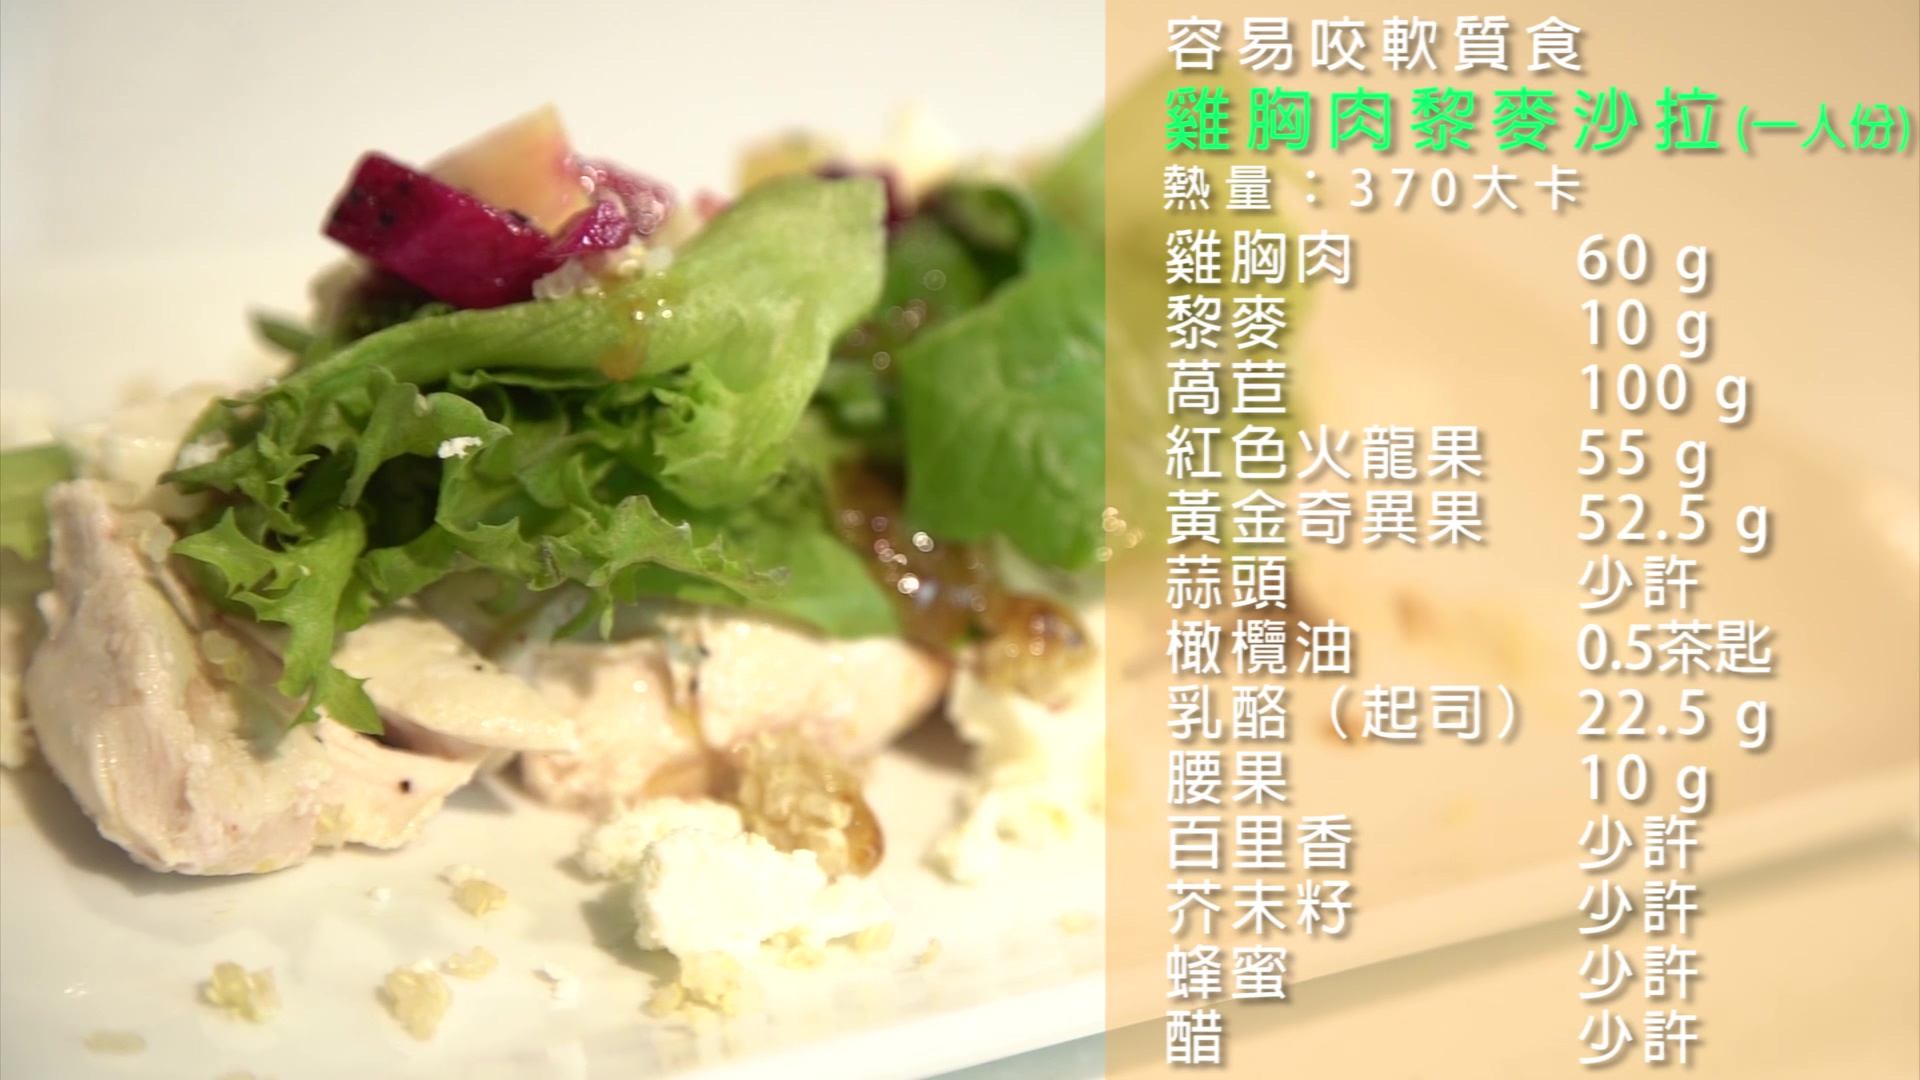 飲食質地料理影片-容易咬軟質食-雞胸肉黎麥沙拉套餐篇文章照片